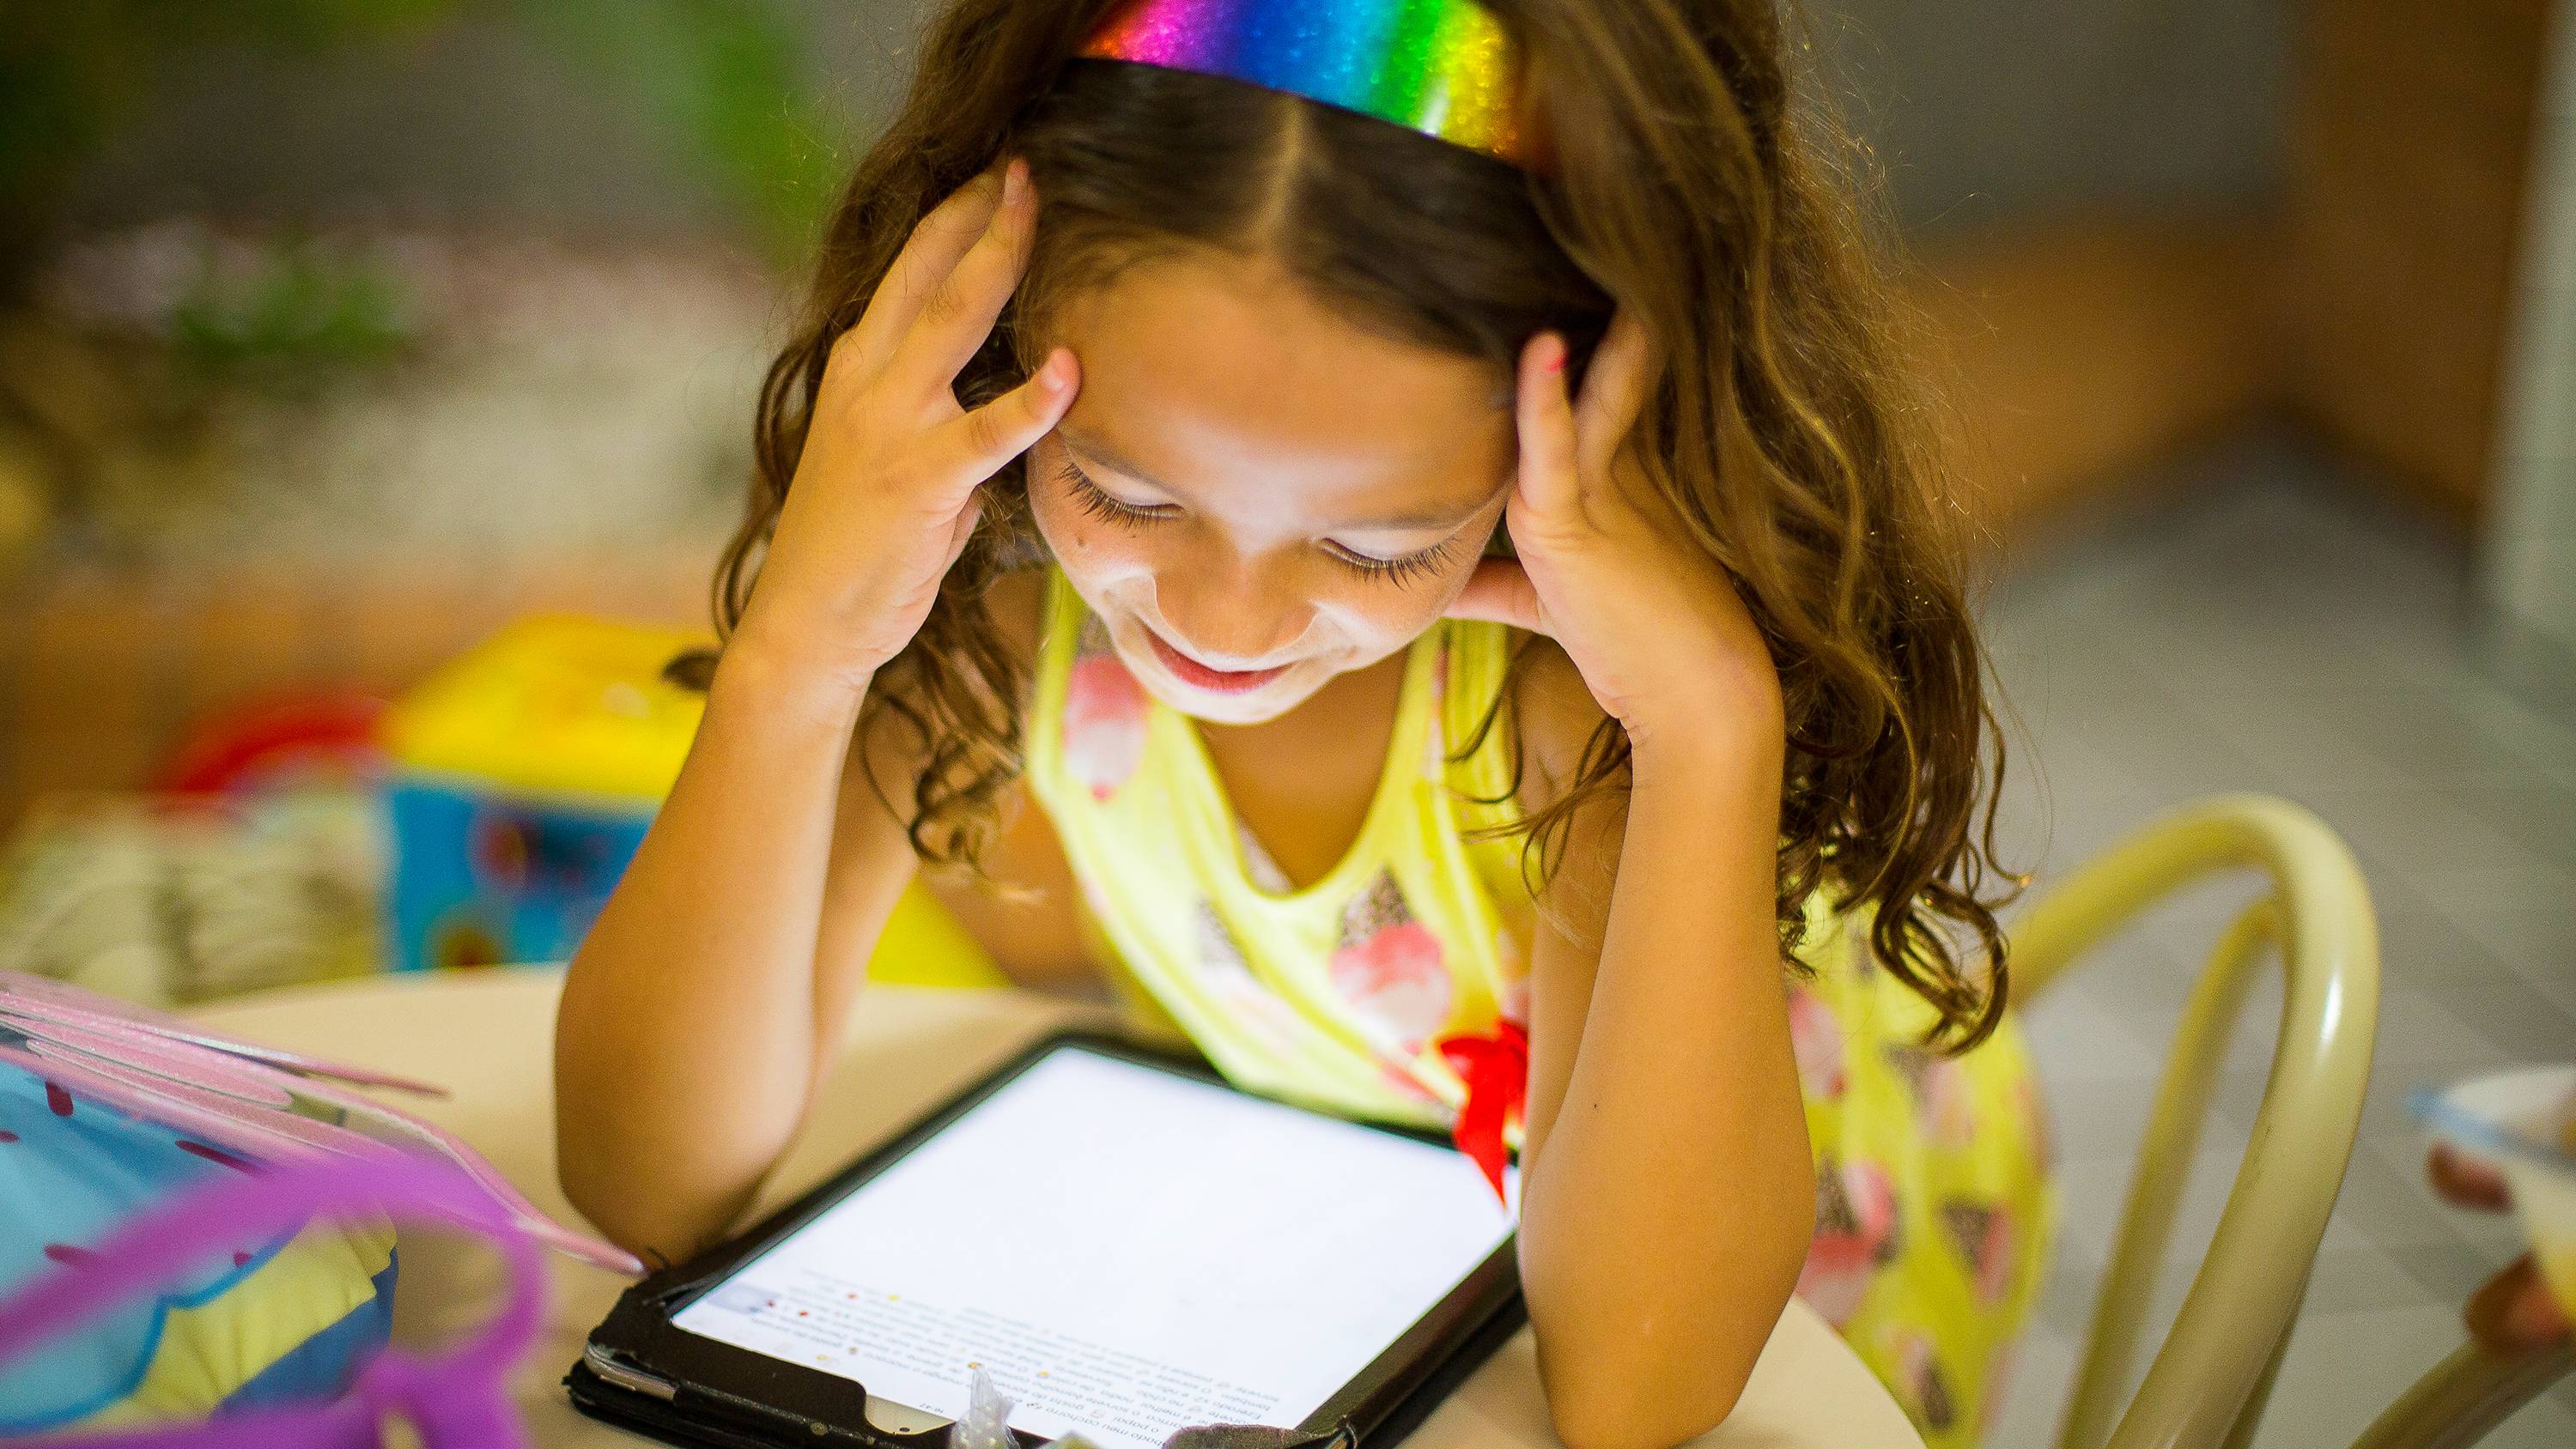 Как отучить ребенка от компьютера и игр в планшете?